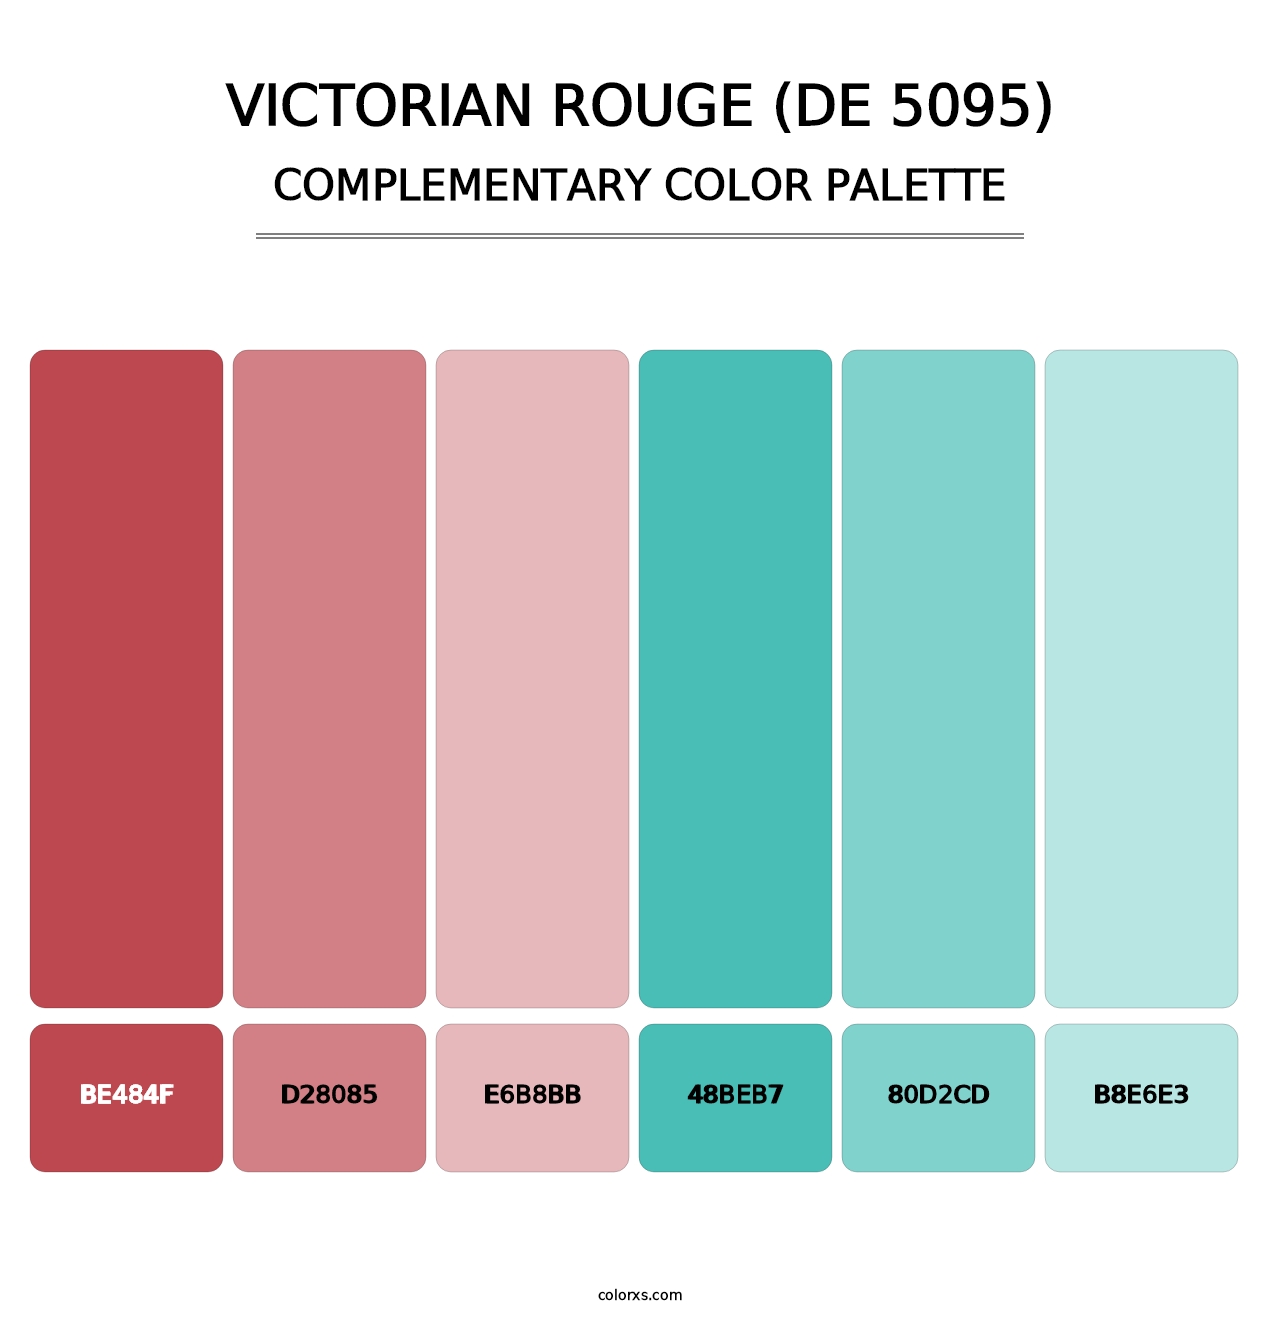 Victorian Rouge (DE 5095) - Complementary Color Palette